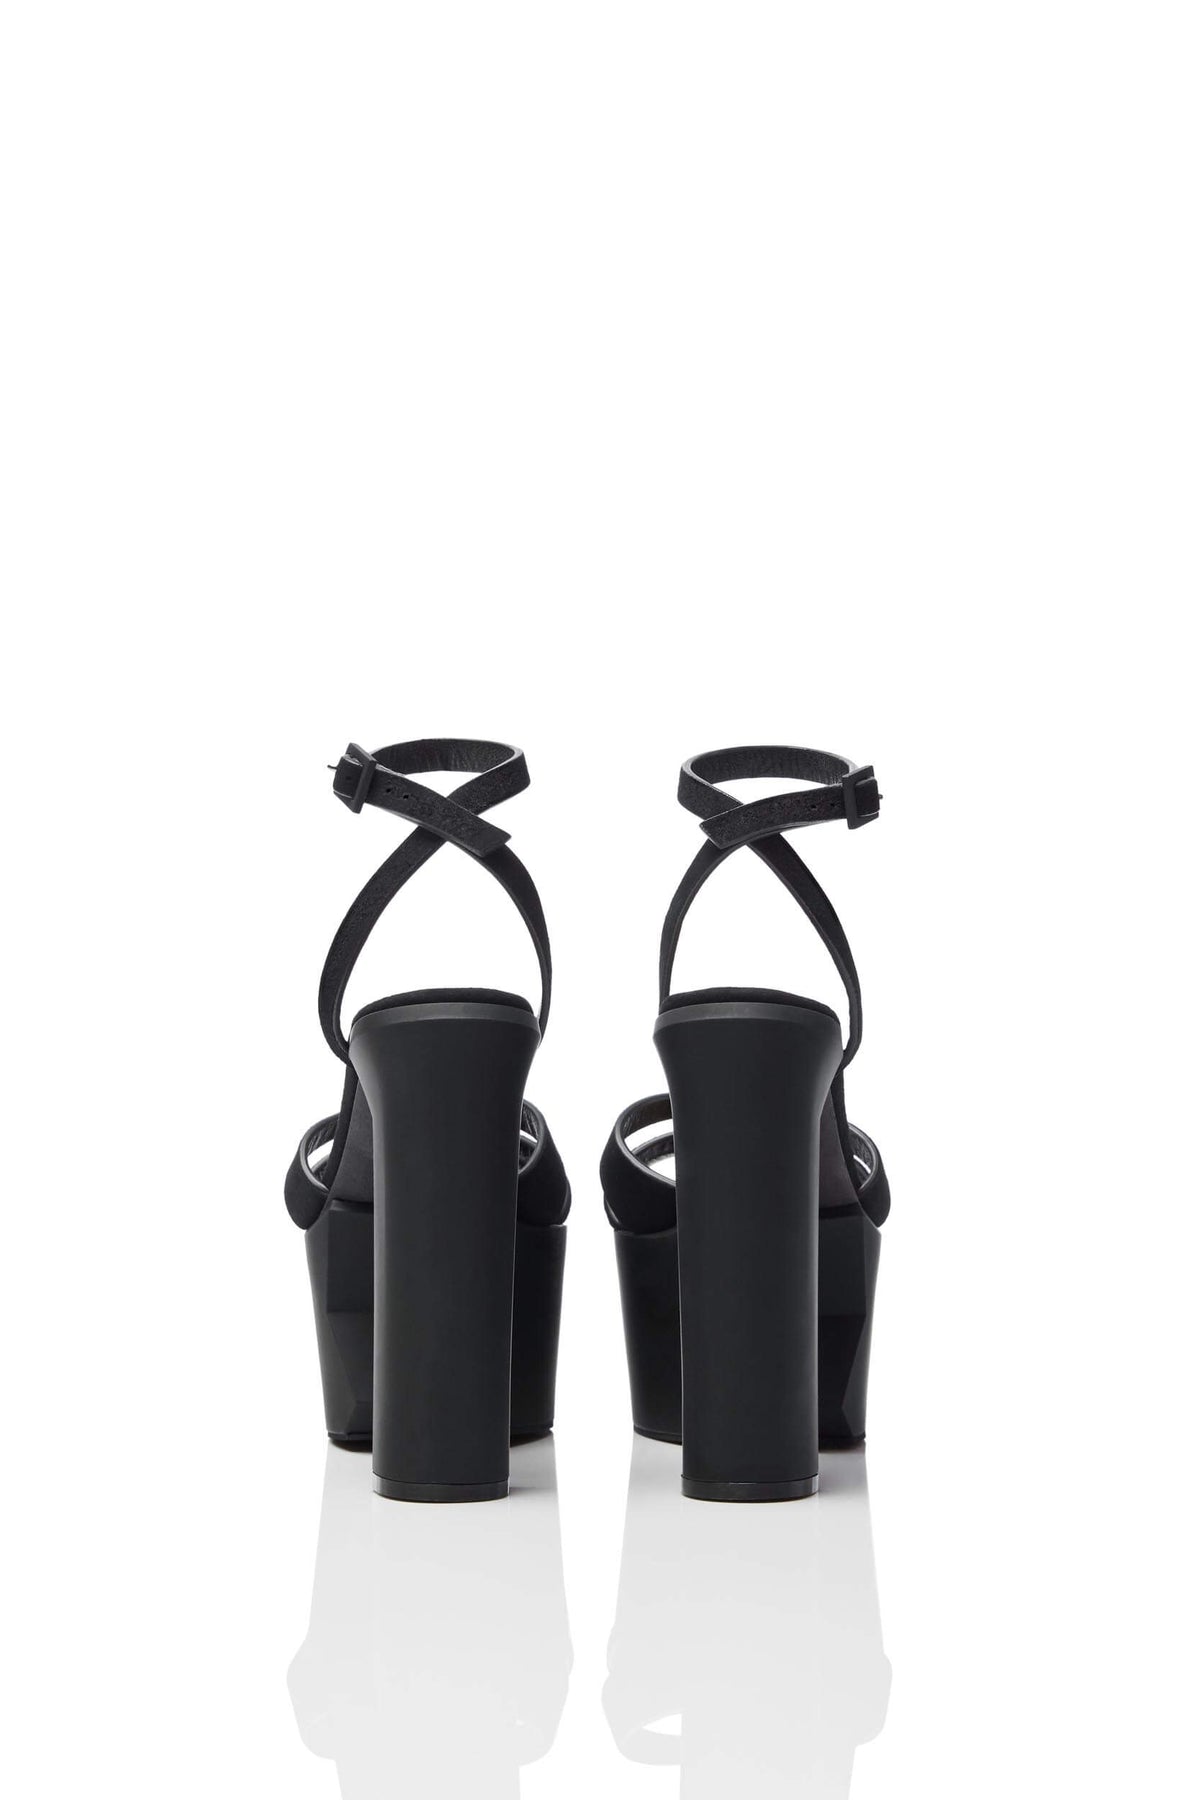 HAIKI 801 – Multi-band platform sandal with self-adjusting ankle strap. Made of Soft Kidsuede in black. 